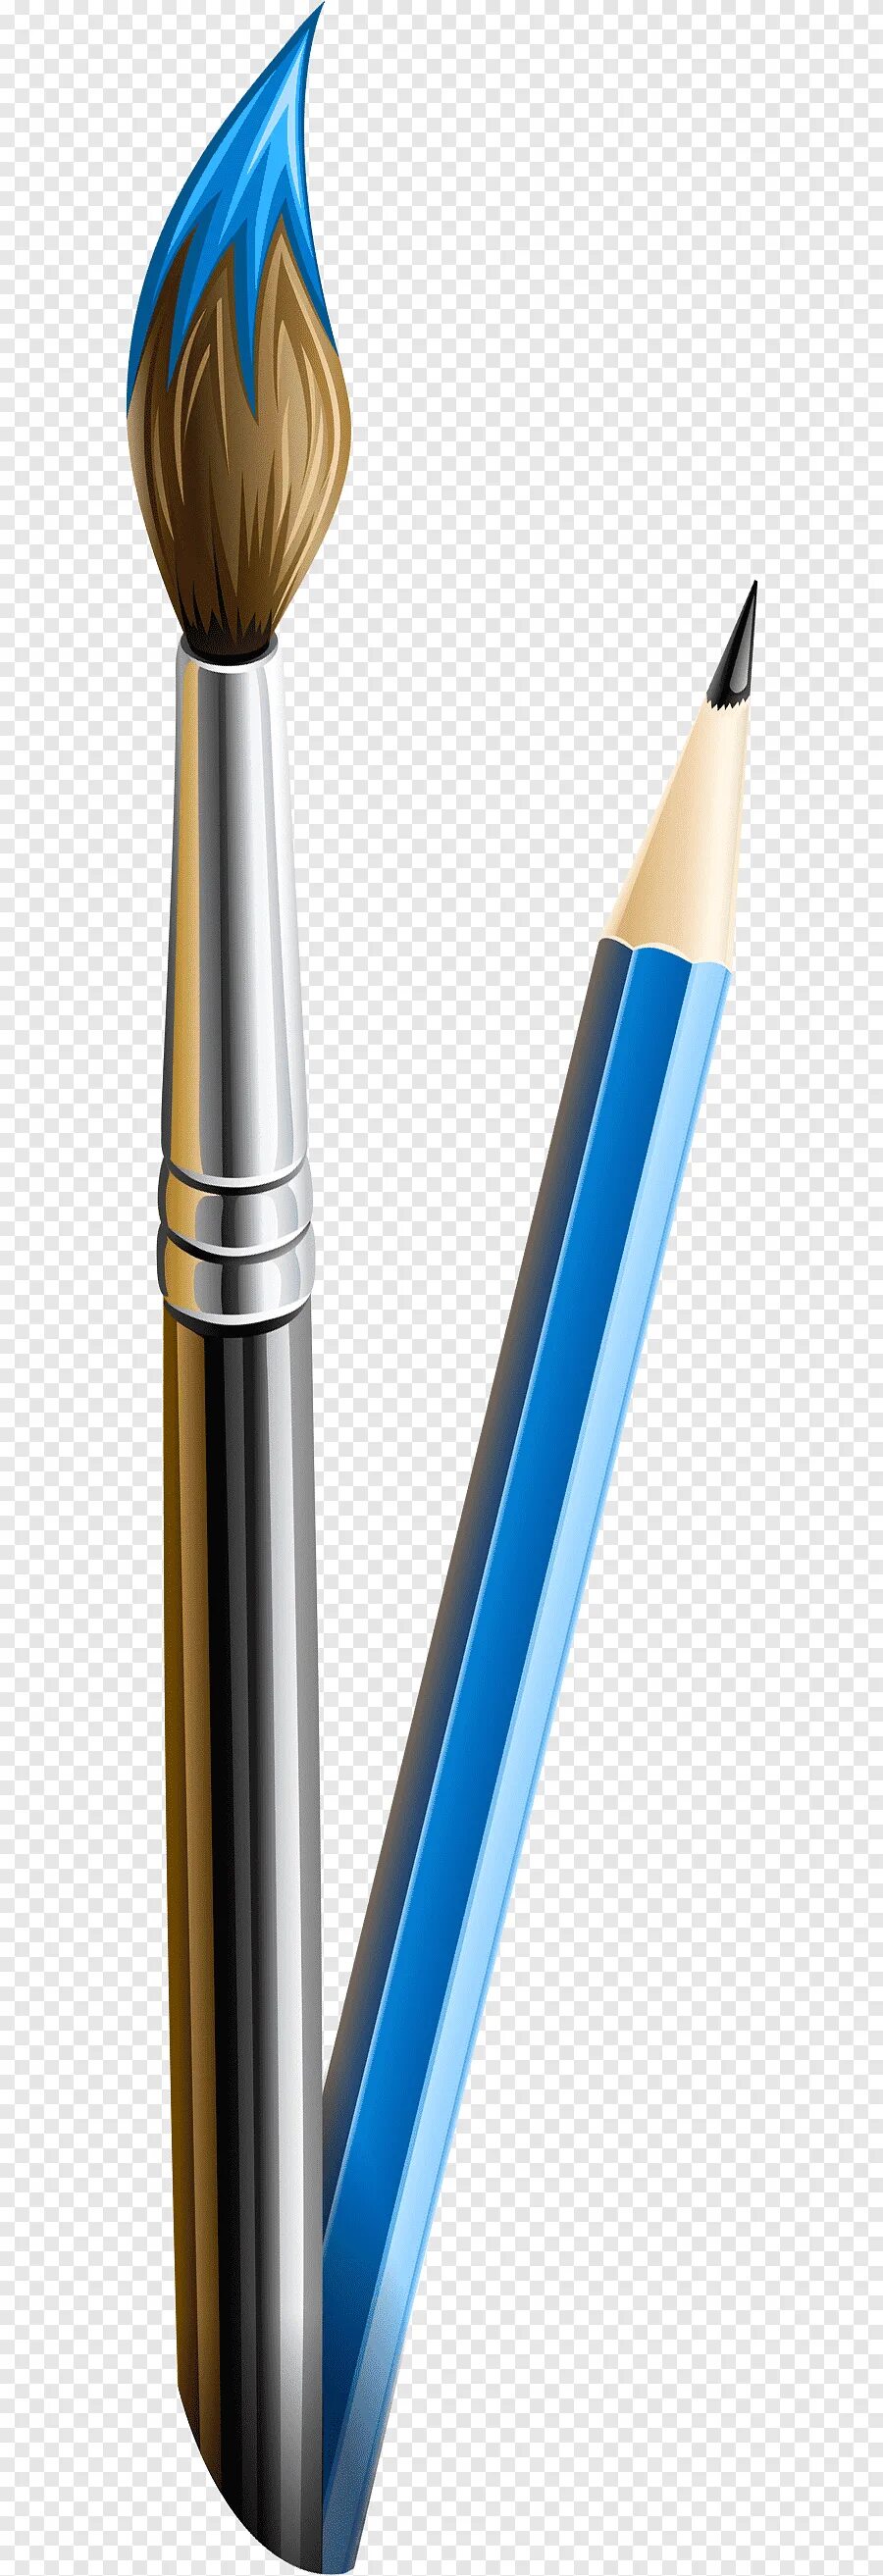 Pencils brushes. Кисточка и карандаш. Кисть карандашом. Кисть и карандаш вектор. Карандаши и Кисточки на прозрачном фоне.